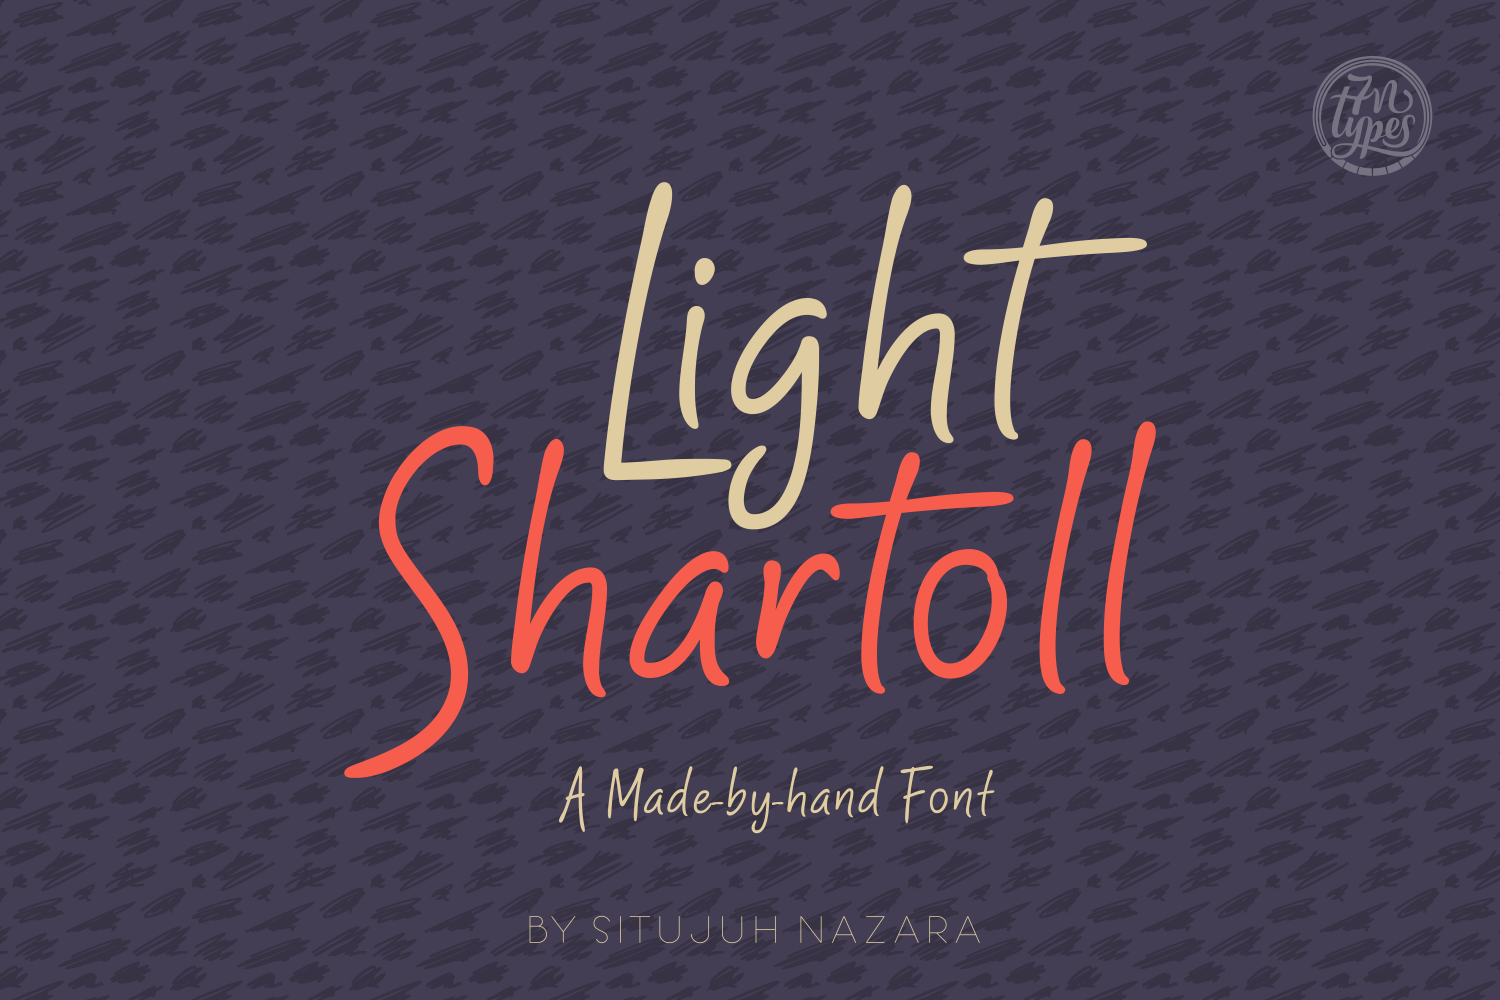 Shartoll Light Font